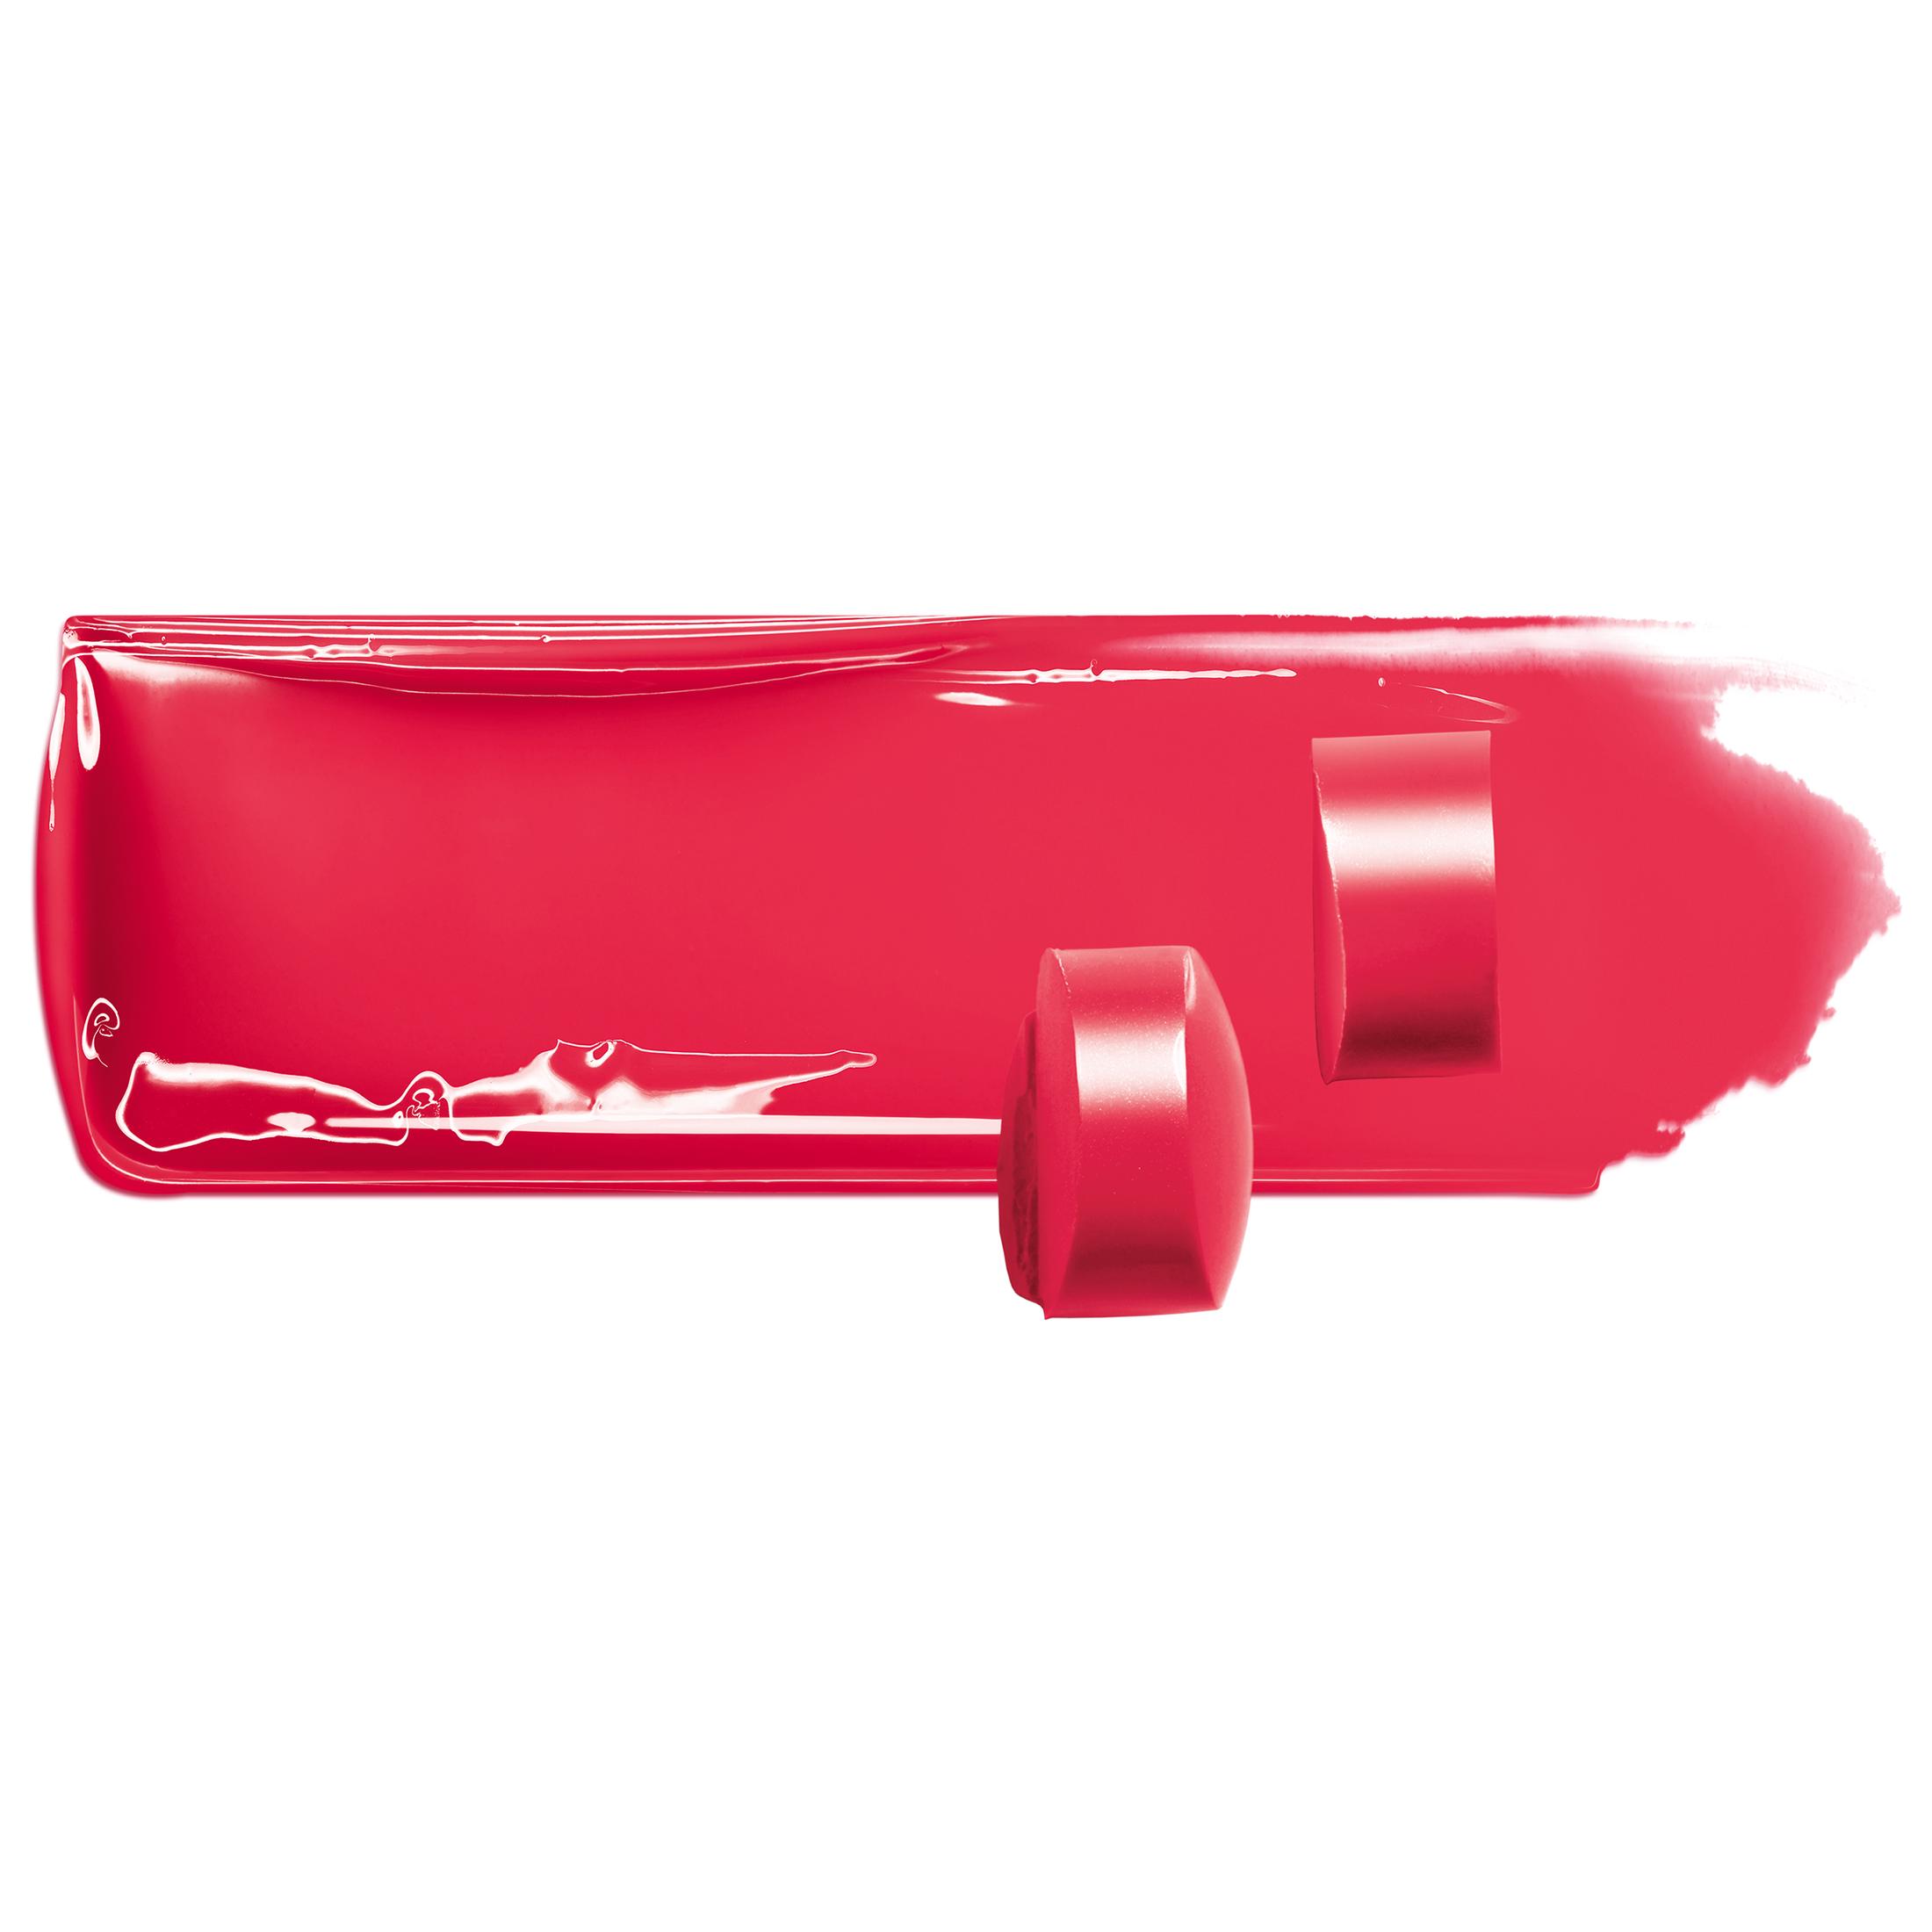 L'Oreal Paris Colour Riche Shine Glossy Ultra Rich Lipstick, Lacquered Strawberry - image 3 of 5